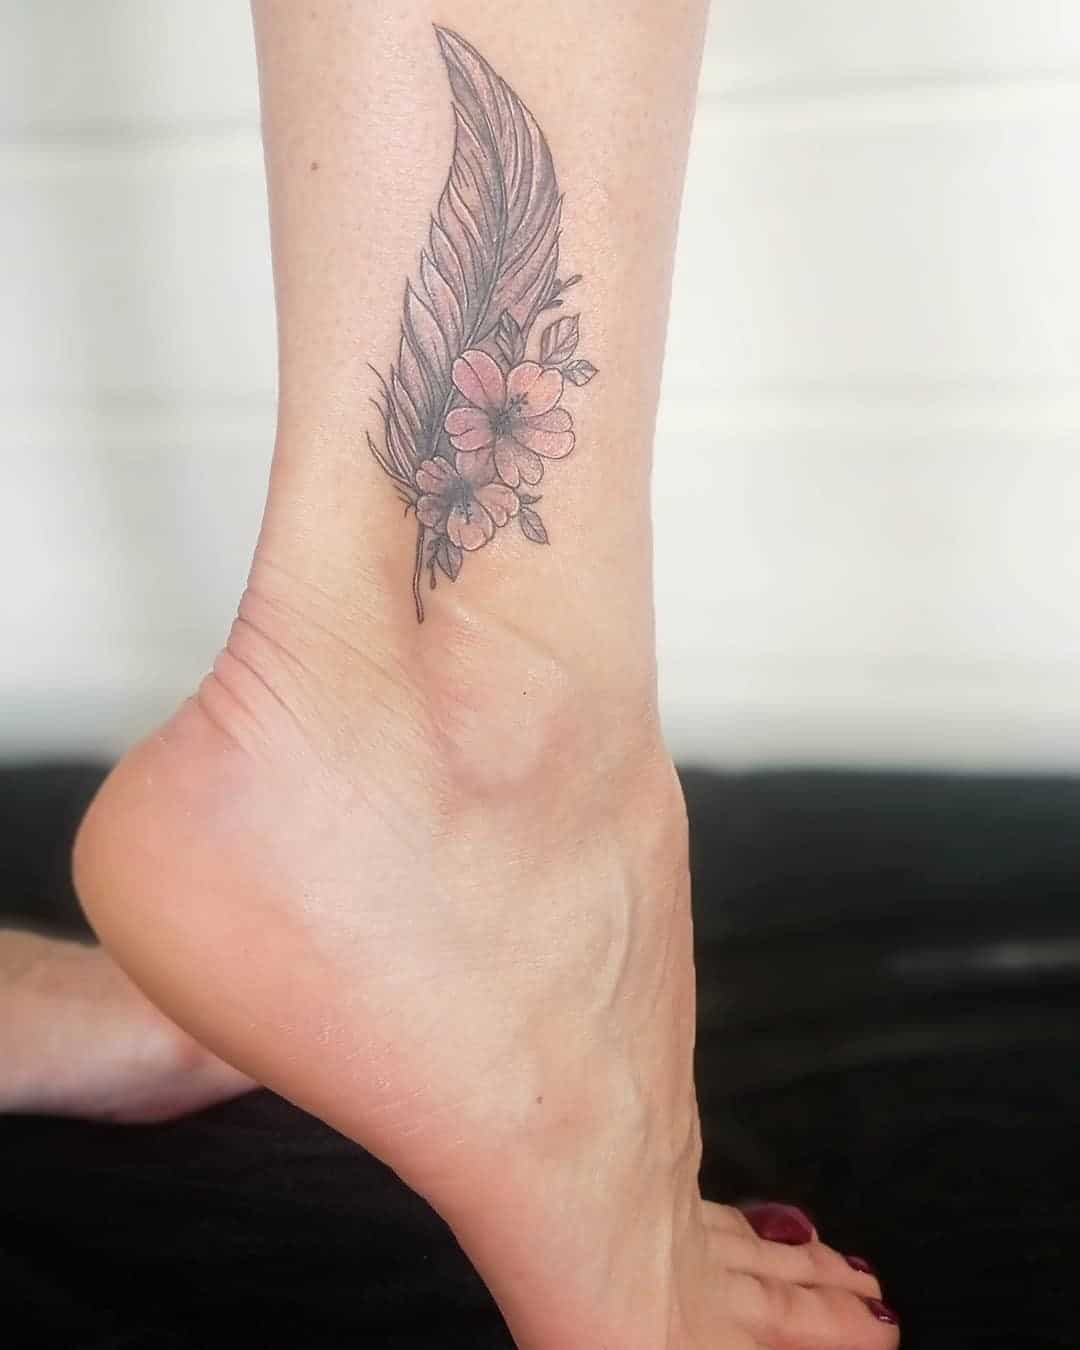 Small feather tattoo    tattoo feathertattoo birdtattoo  tending tattooartist theartiststattoo  Instagram